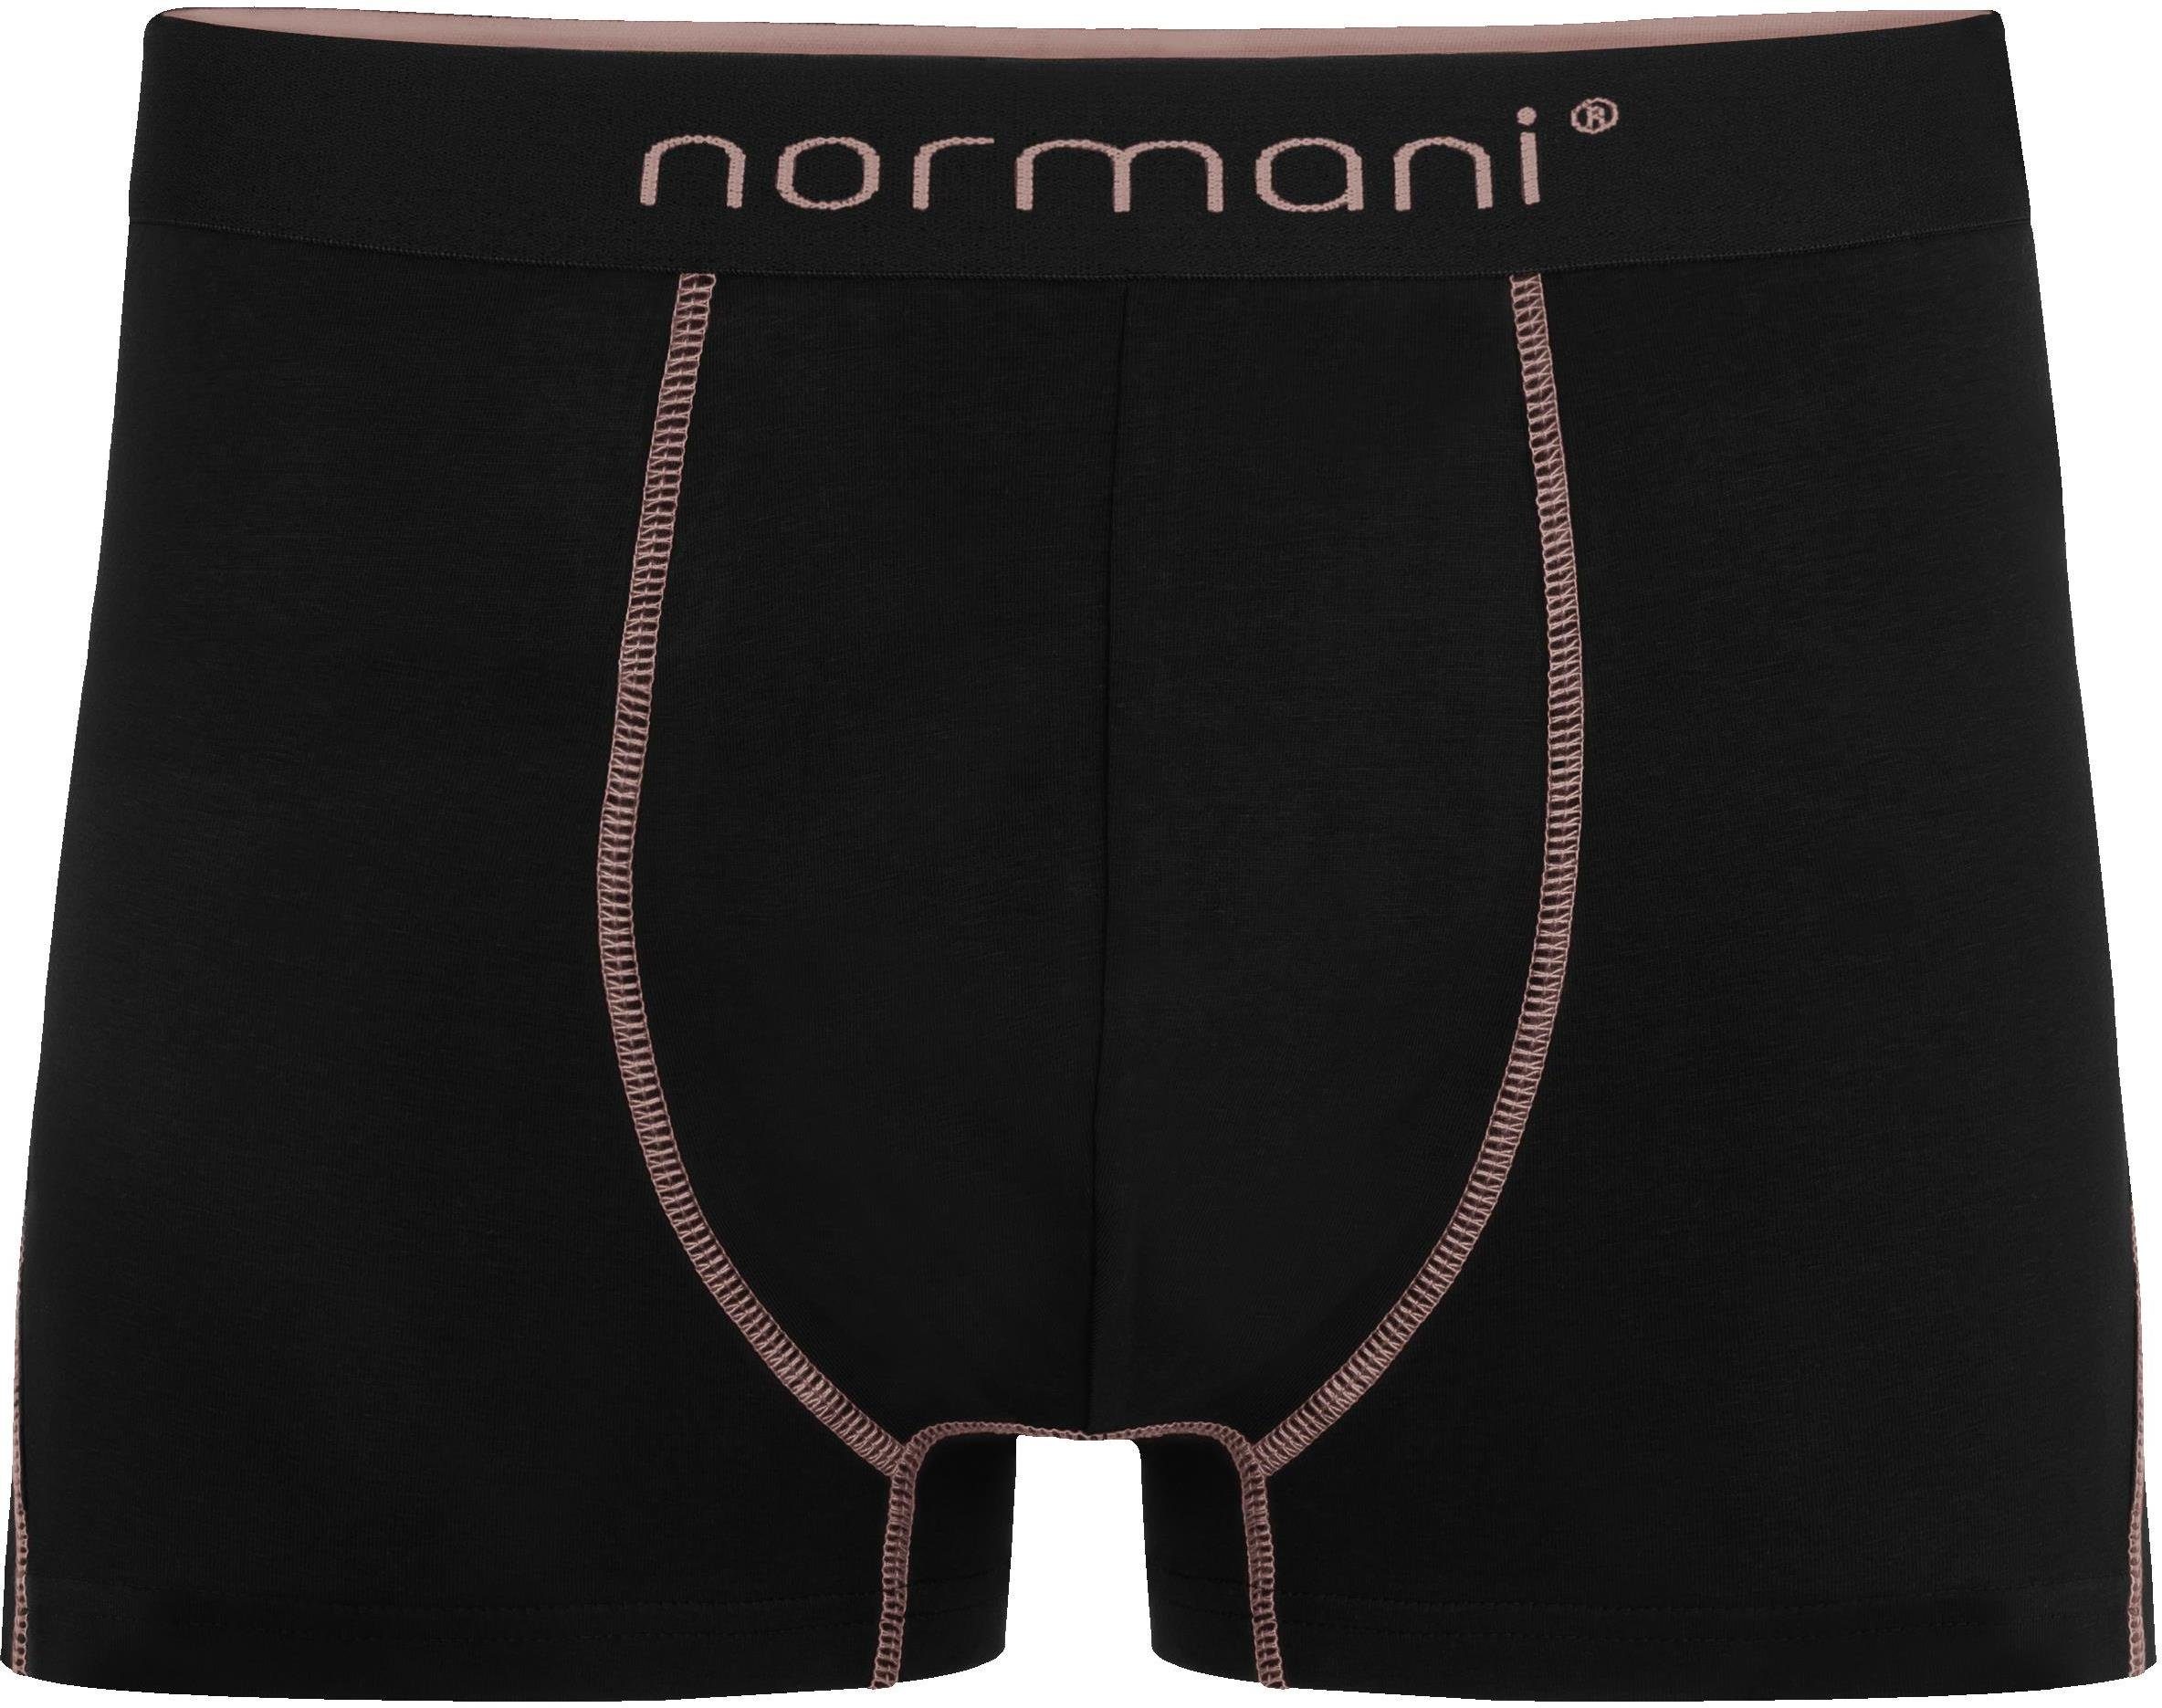 atmungsaktiver Unterhose aus 6 Herren Baumwoll-Boxershorts Boxershorts Lachs/Rot/Schwarz Baumwolle für normani Männer